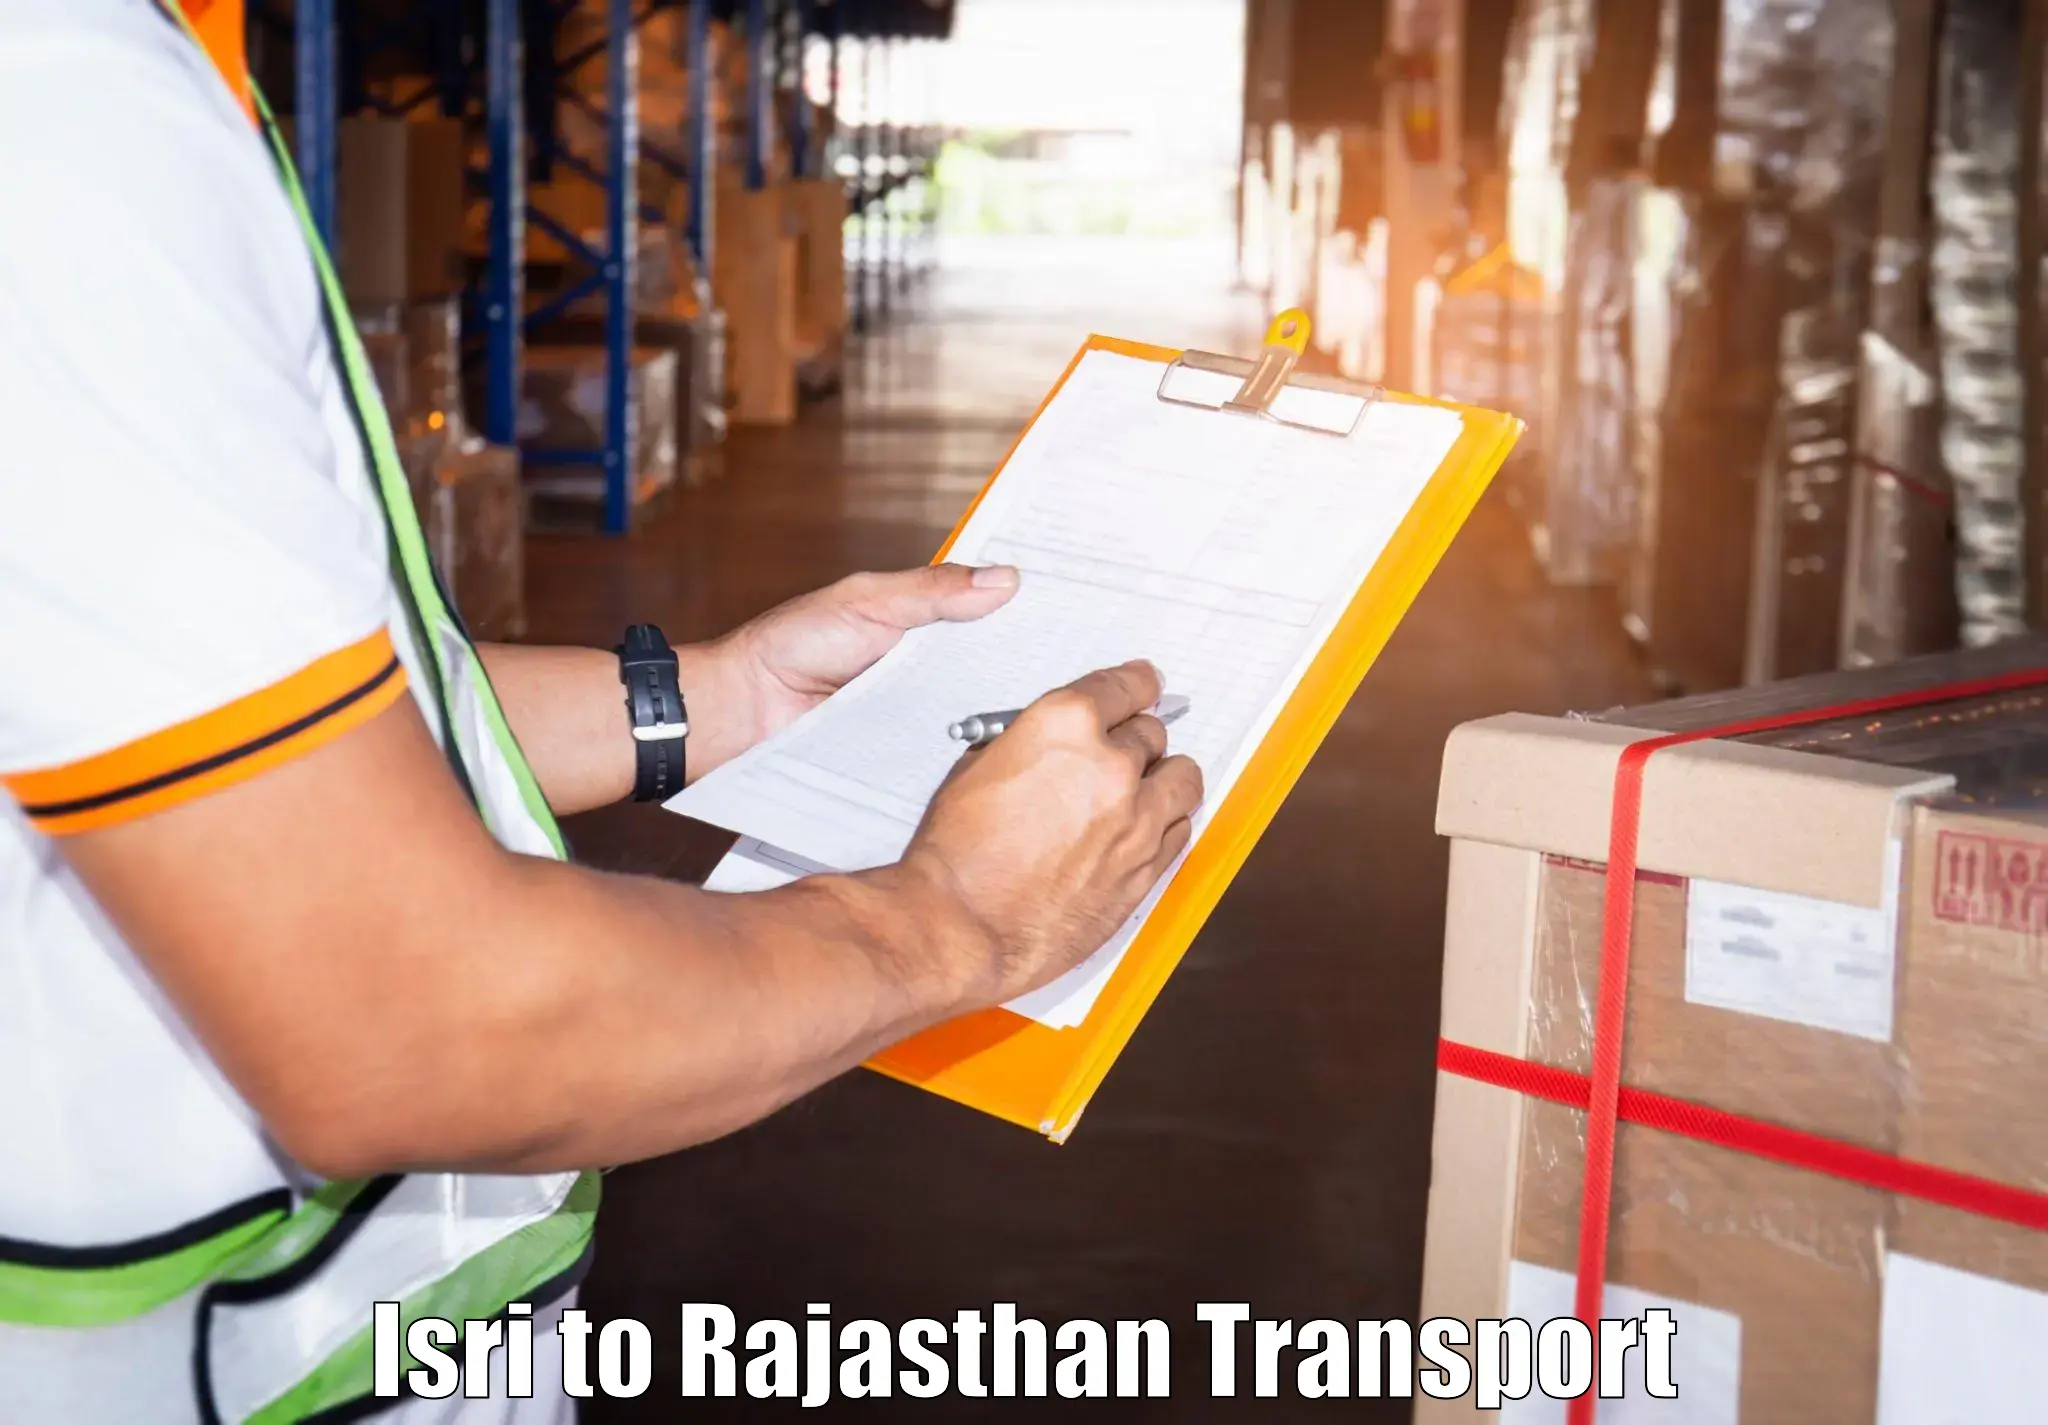 Furniture transport service Isri to Pratapgarh Rajasthan